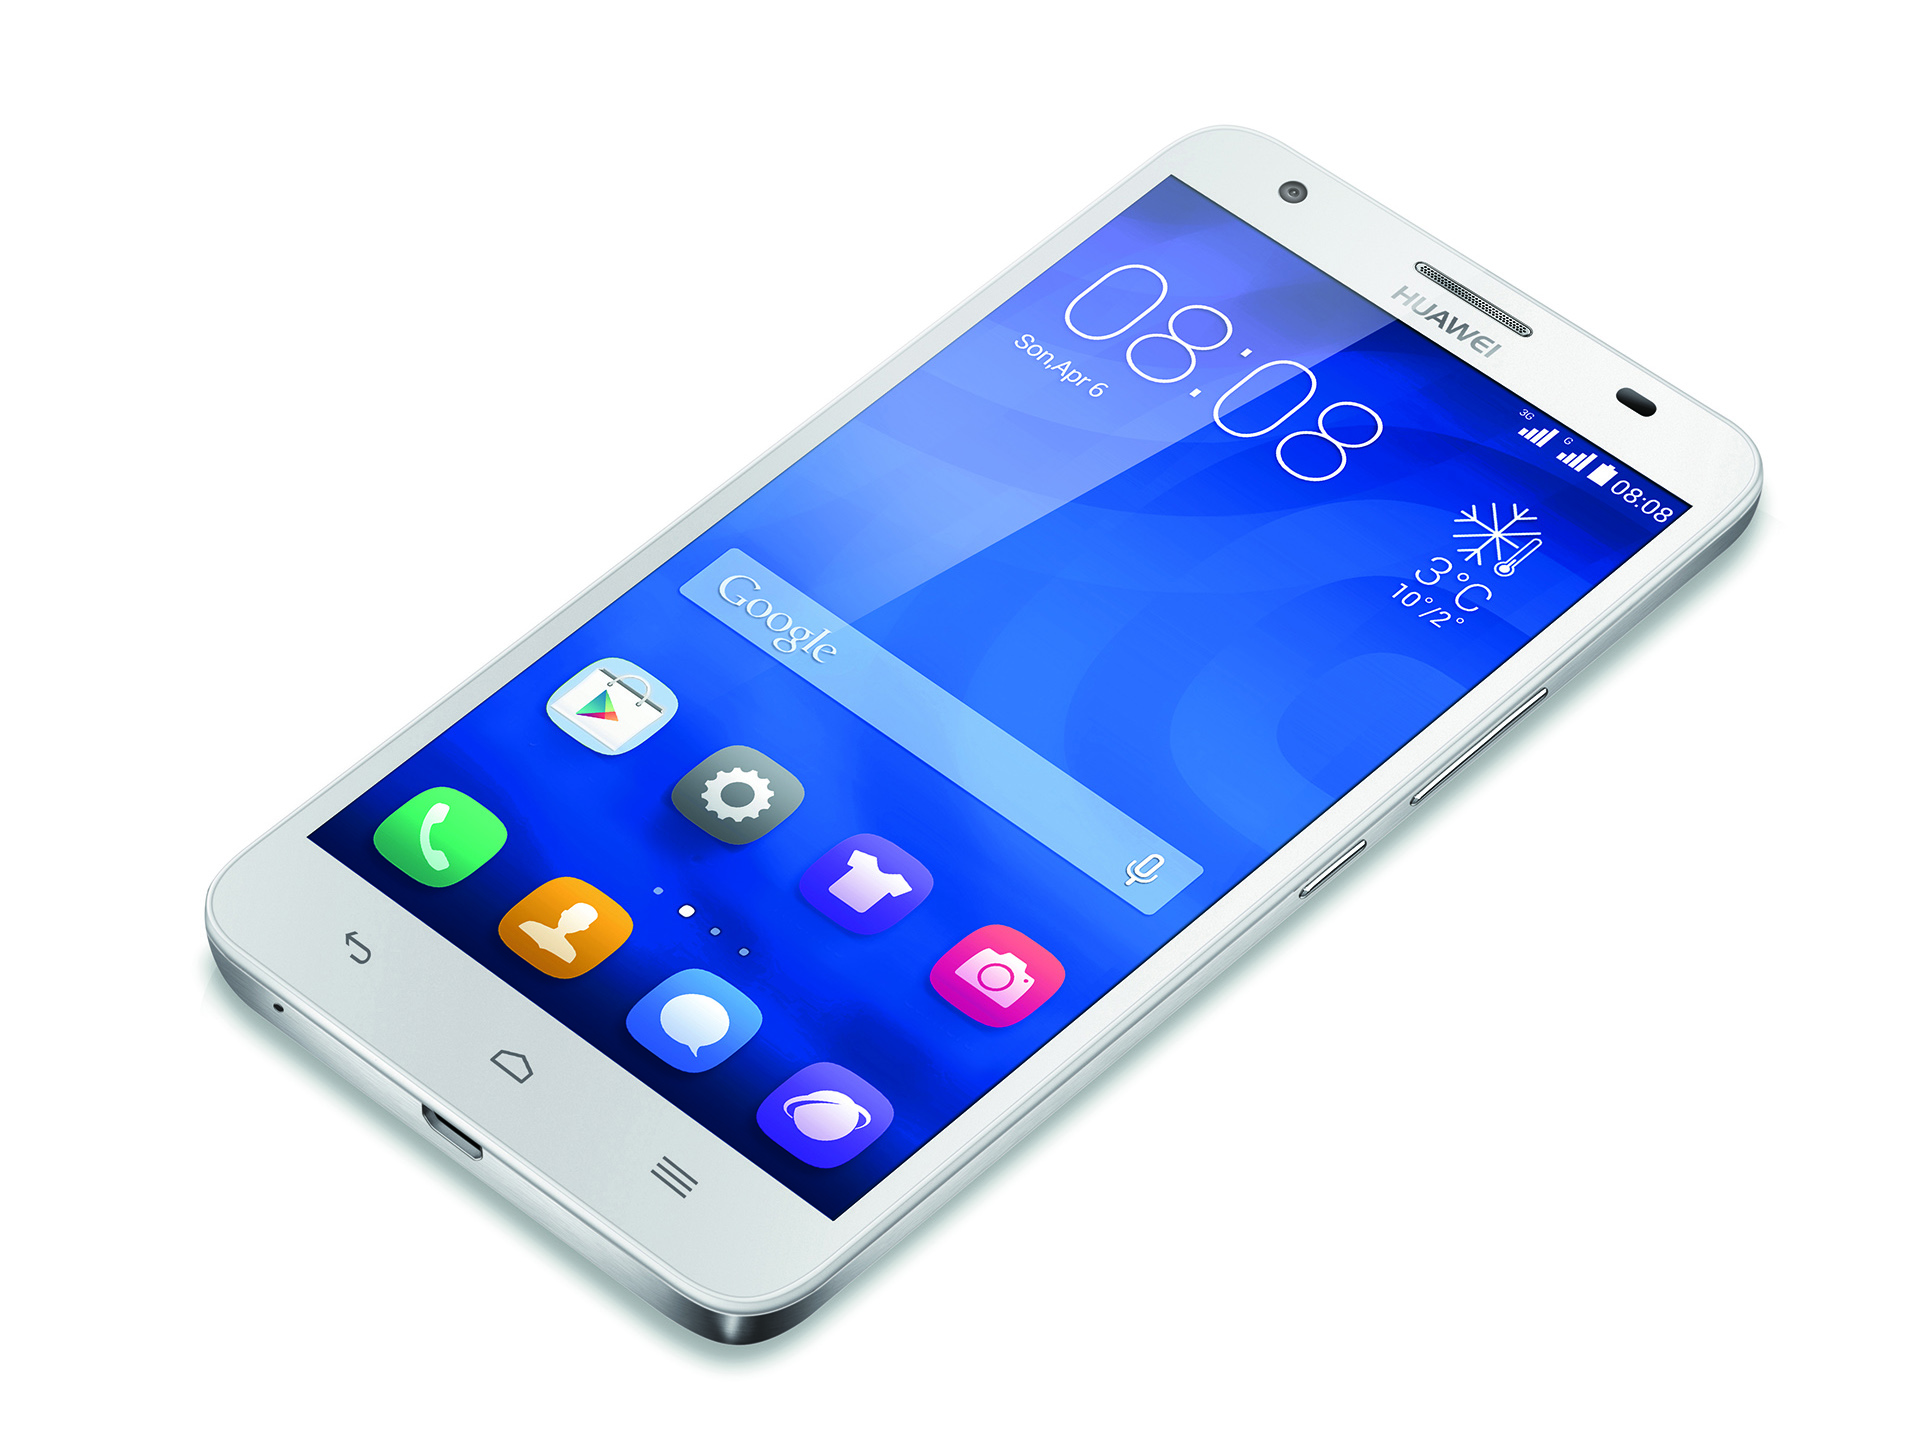 Besmettelijk Medicinaal speler Huawei Ascend G750 Smartphone Review - NotebookCheck.net Reviews